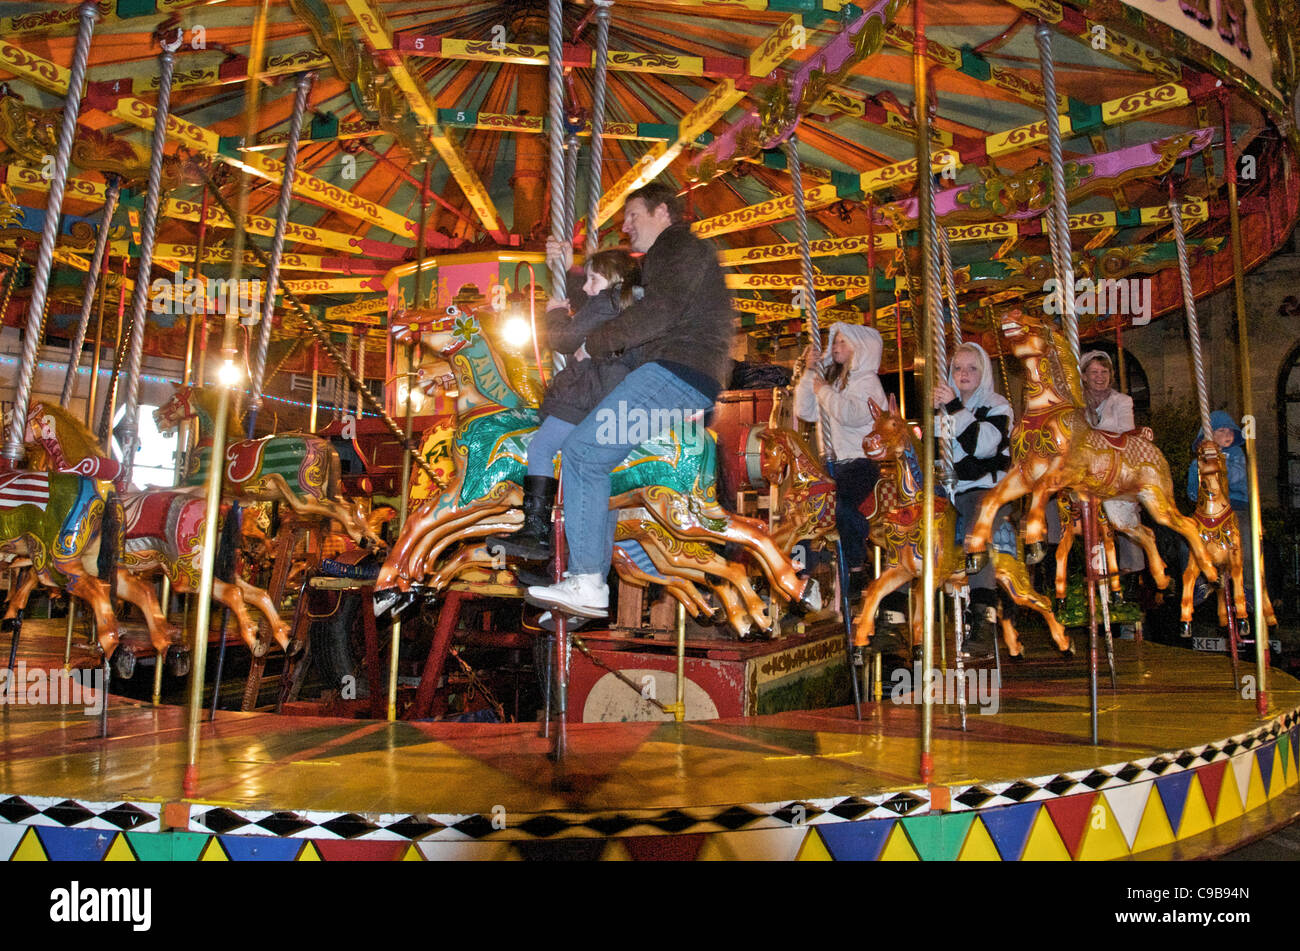 Ciudad de Petworth Fair celebrada en noviembre de cada año por cientos de años. Foto de stock